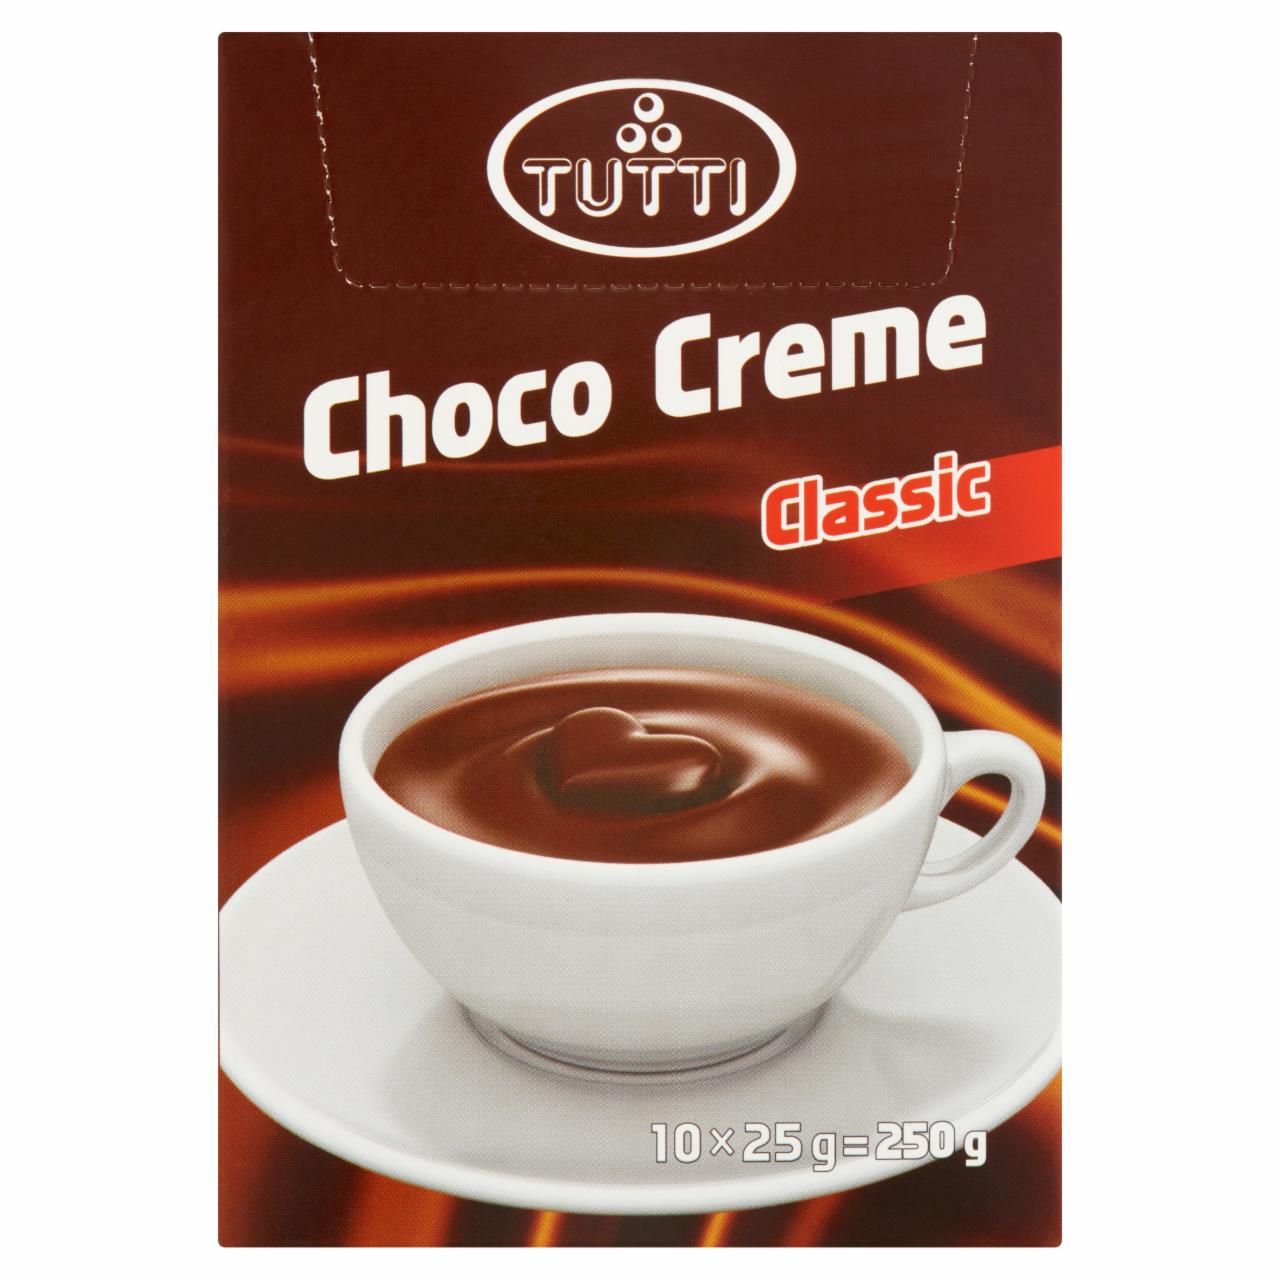 Képek - Choco Creme Classic krémes forró csokoládé italpor Tutti